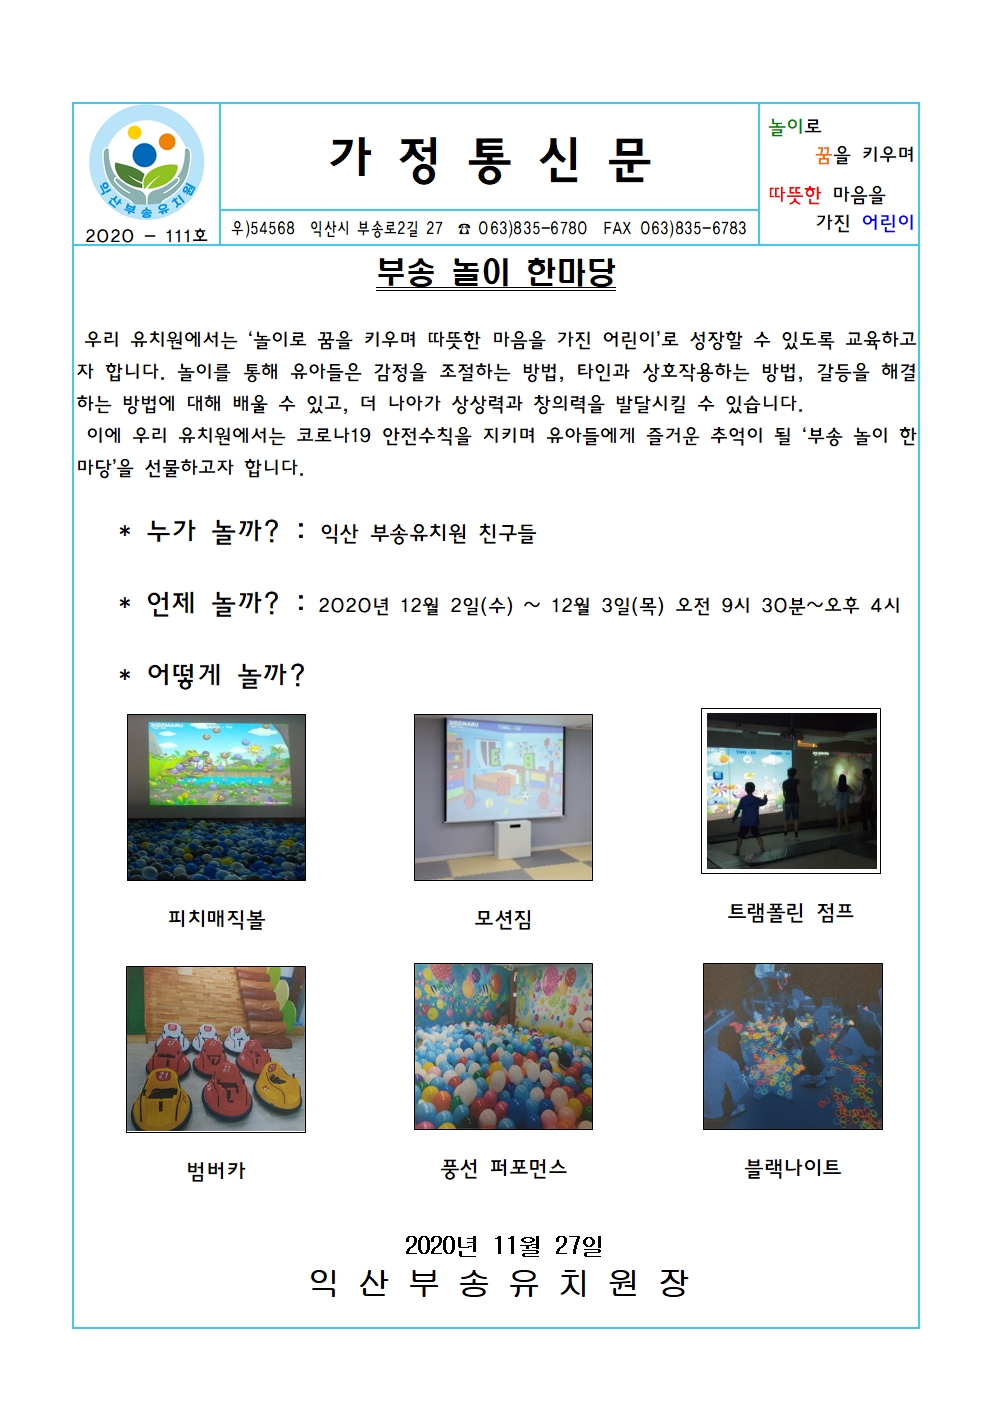 2020-111호 부송 놀이 한마당(20.11.27.)